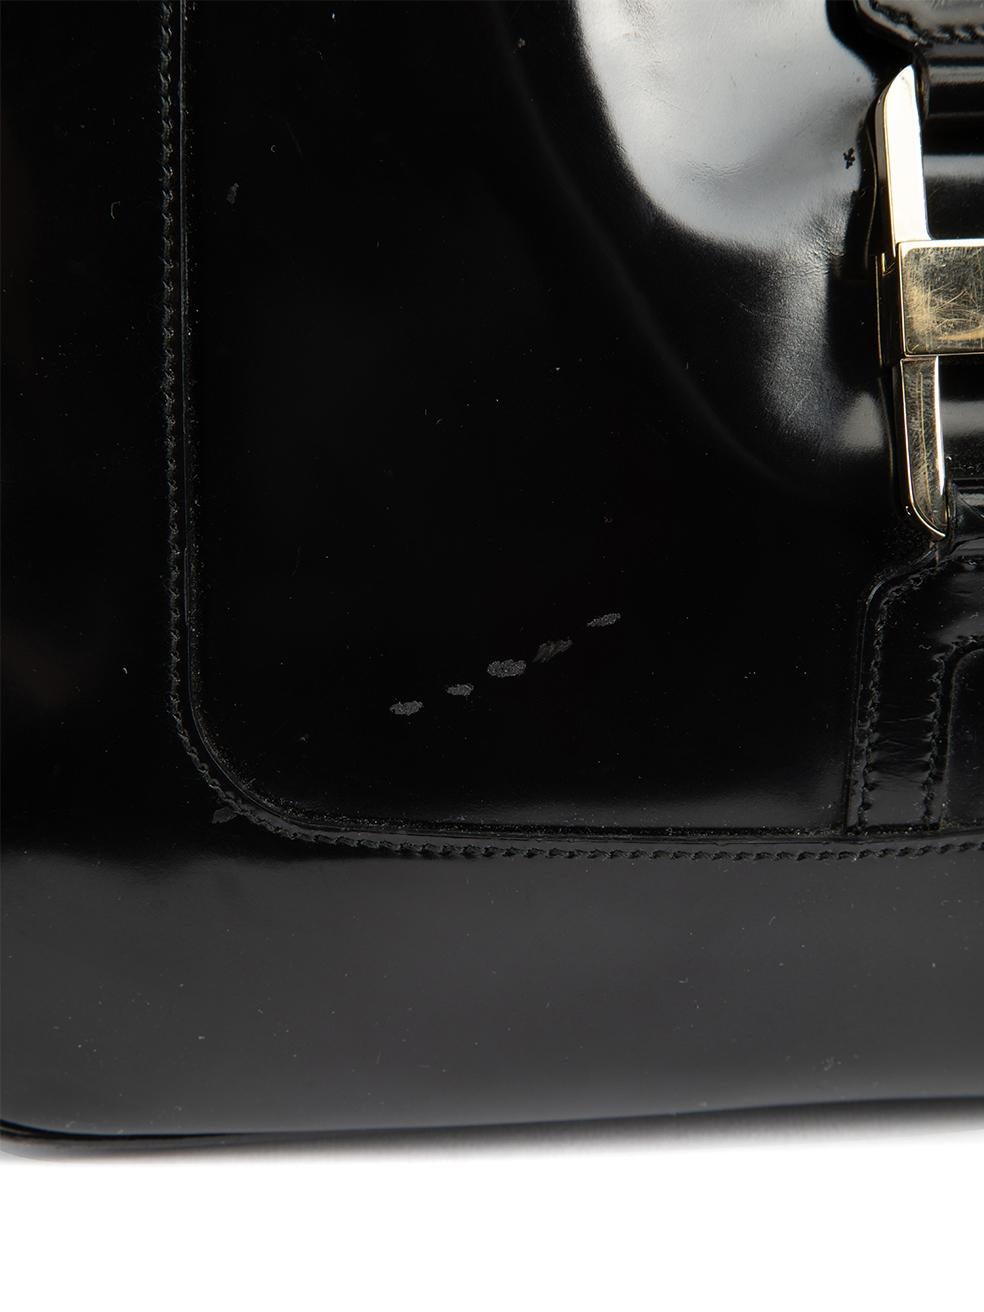 Pre-Loved Gucci Women's Vintage Black Patent Leather Shoulder Bag 2